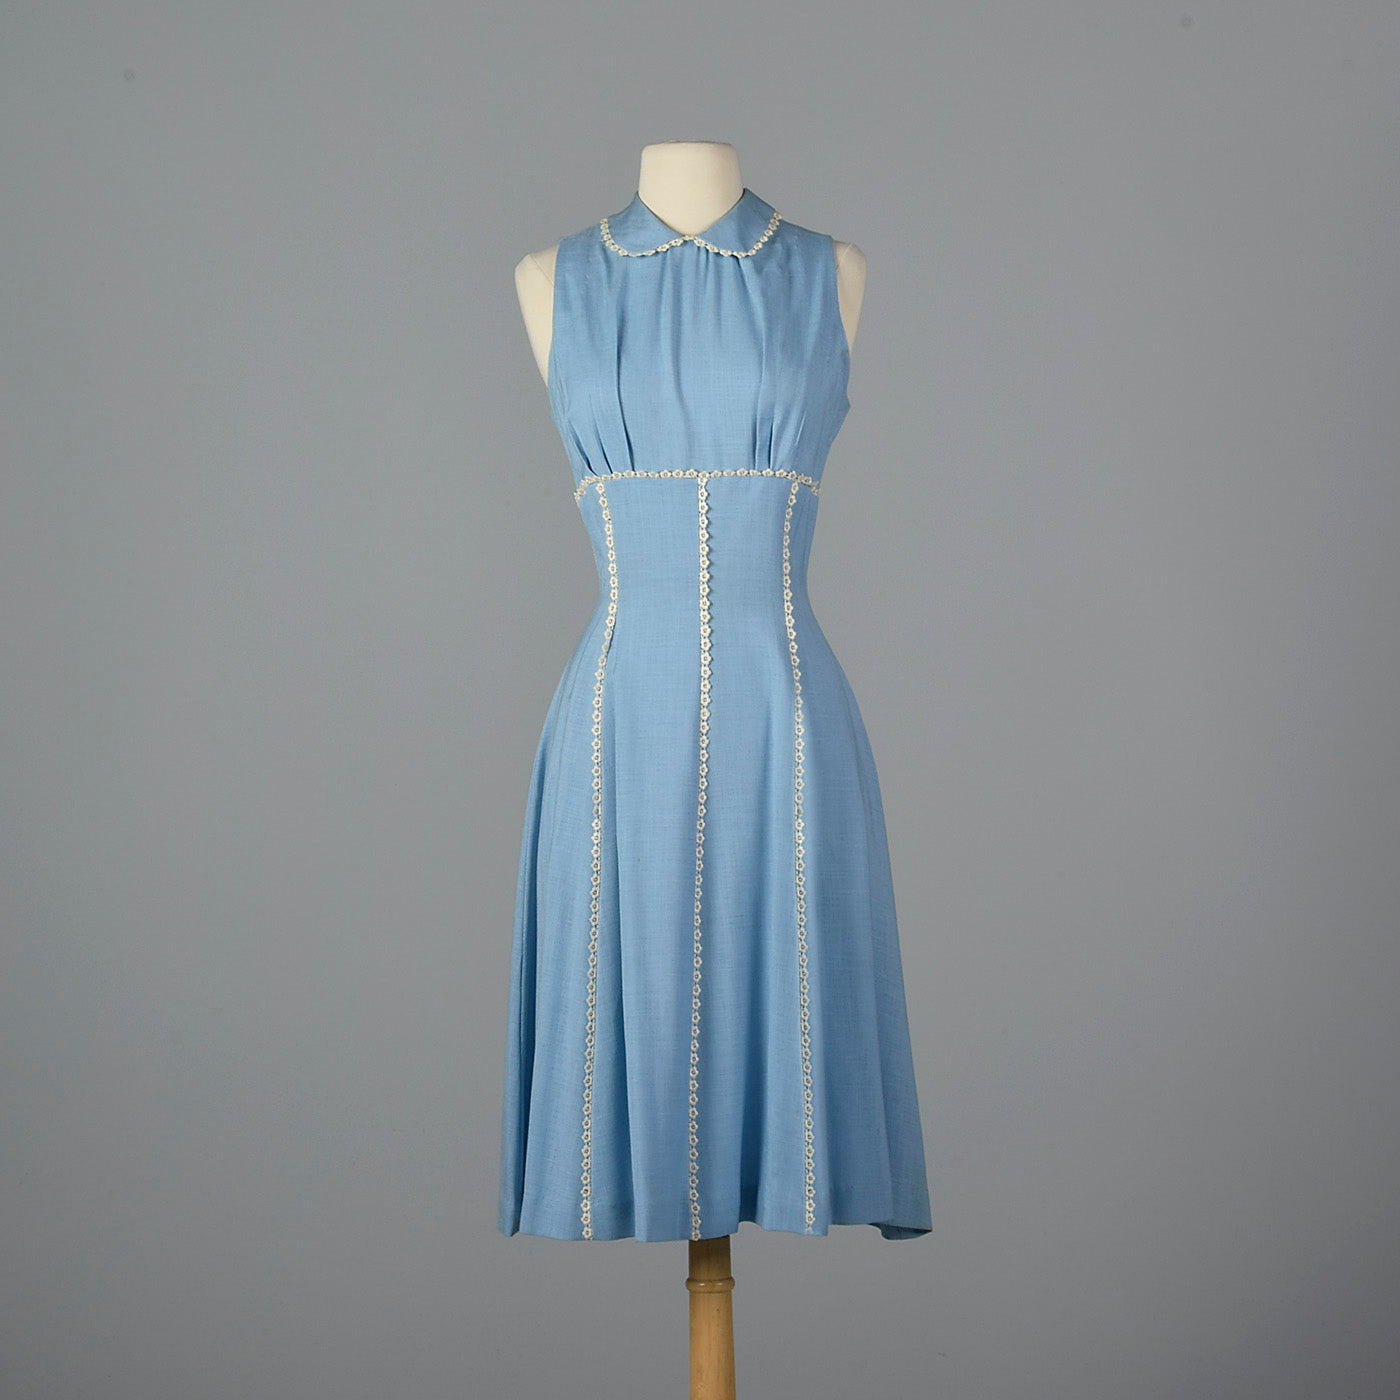 1950s Blue Dress with Floral Lace Trim